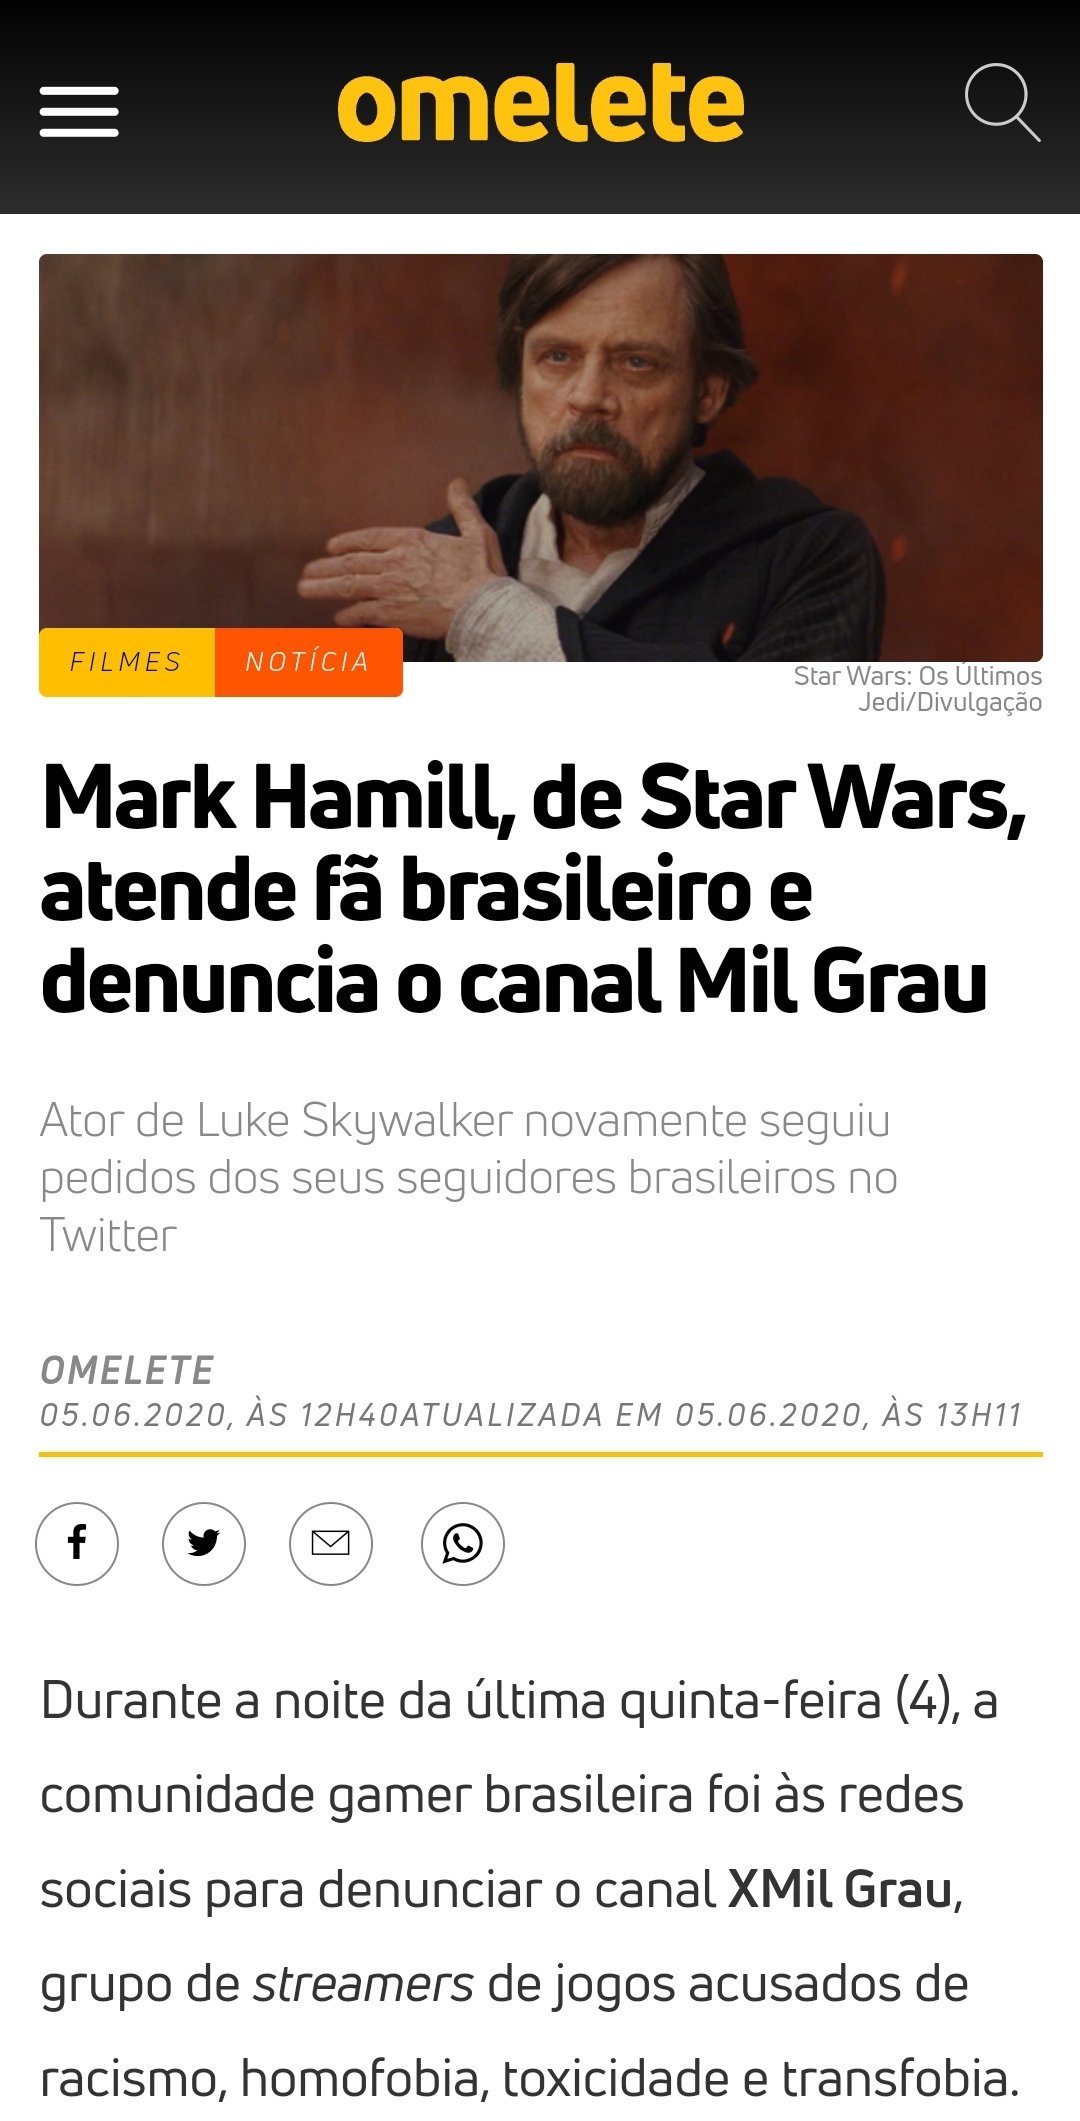 Mark Hamill de Star Wars denuncia o canal Mil Grau a pedido de um